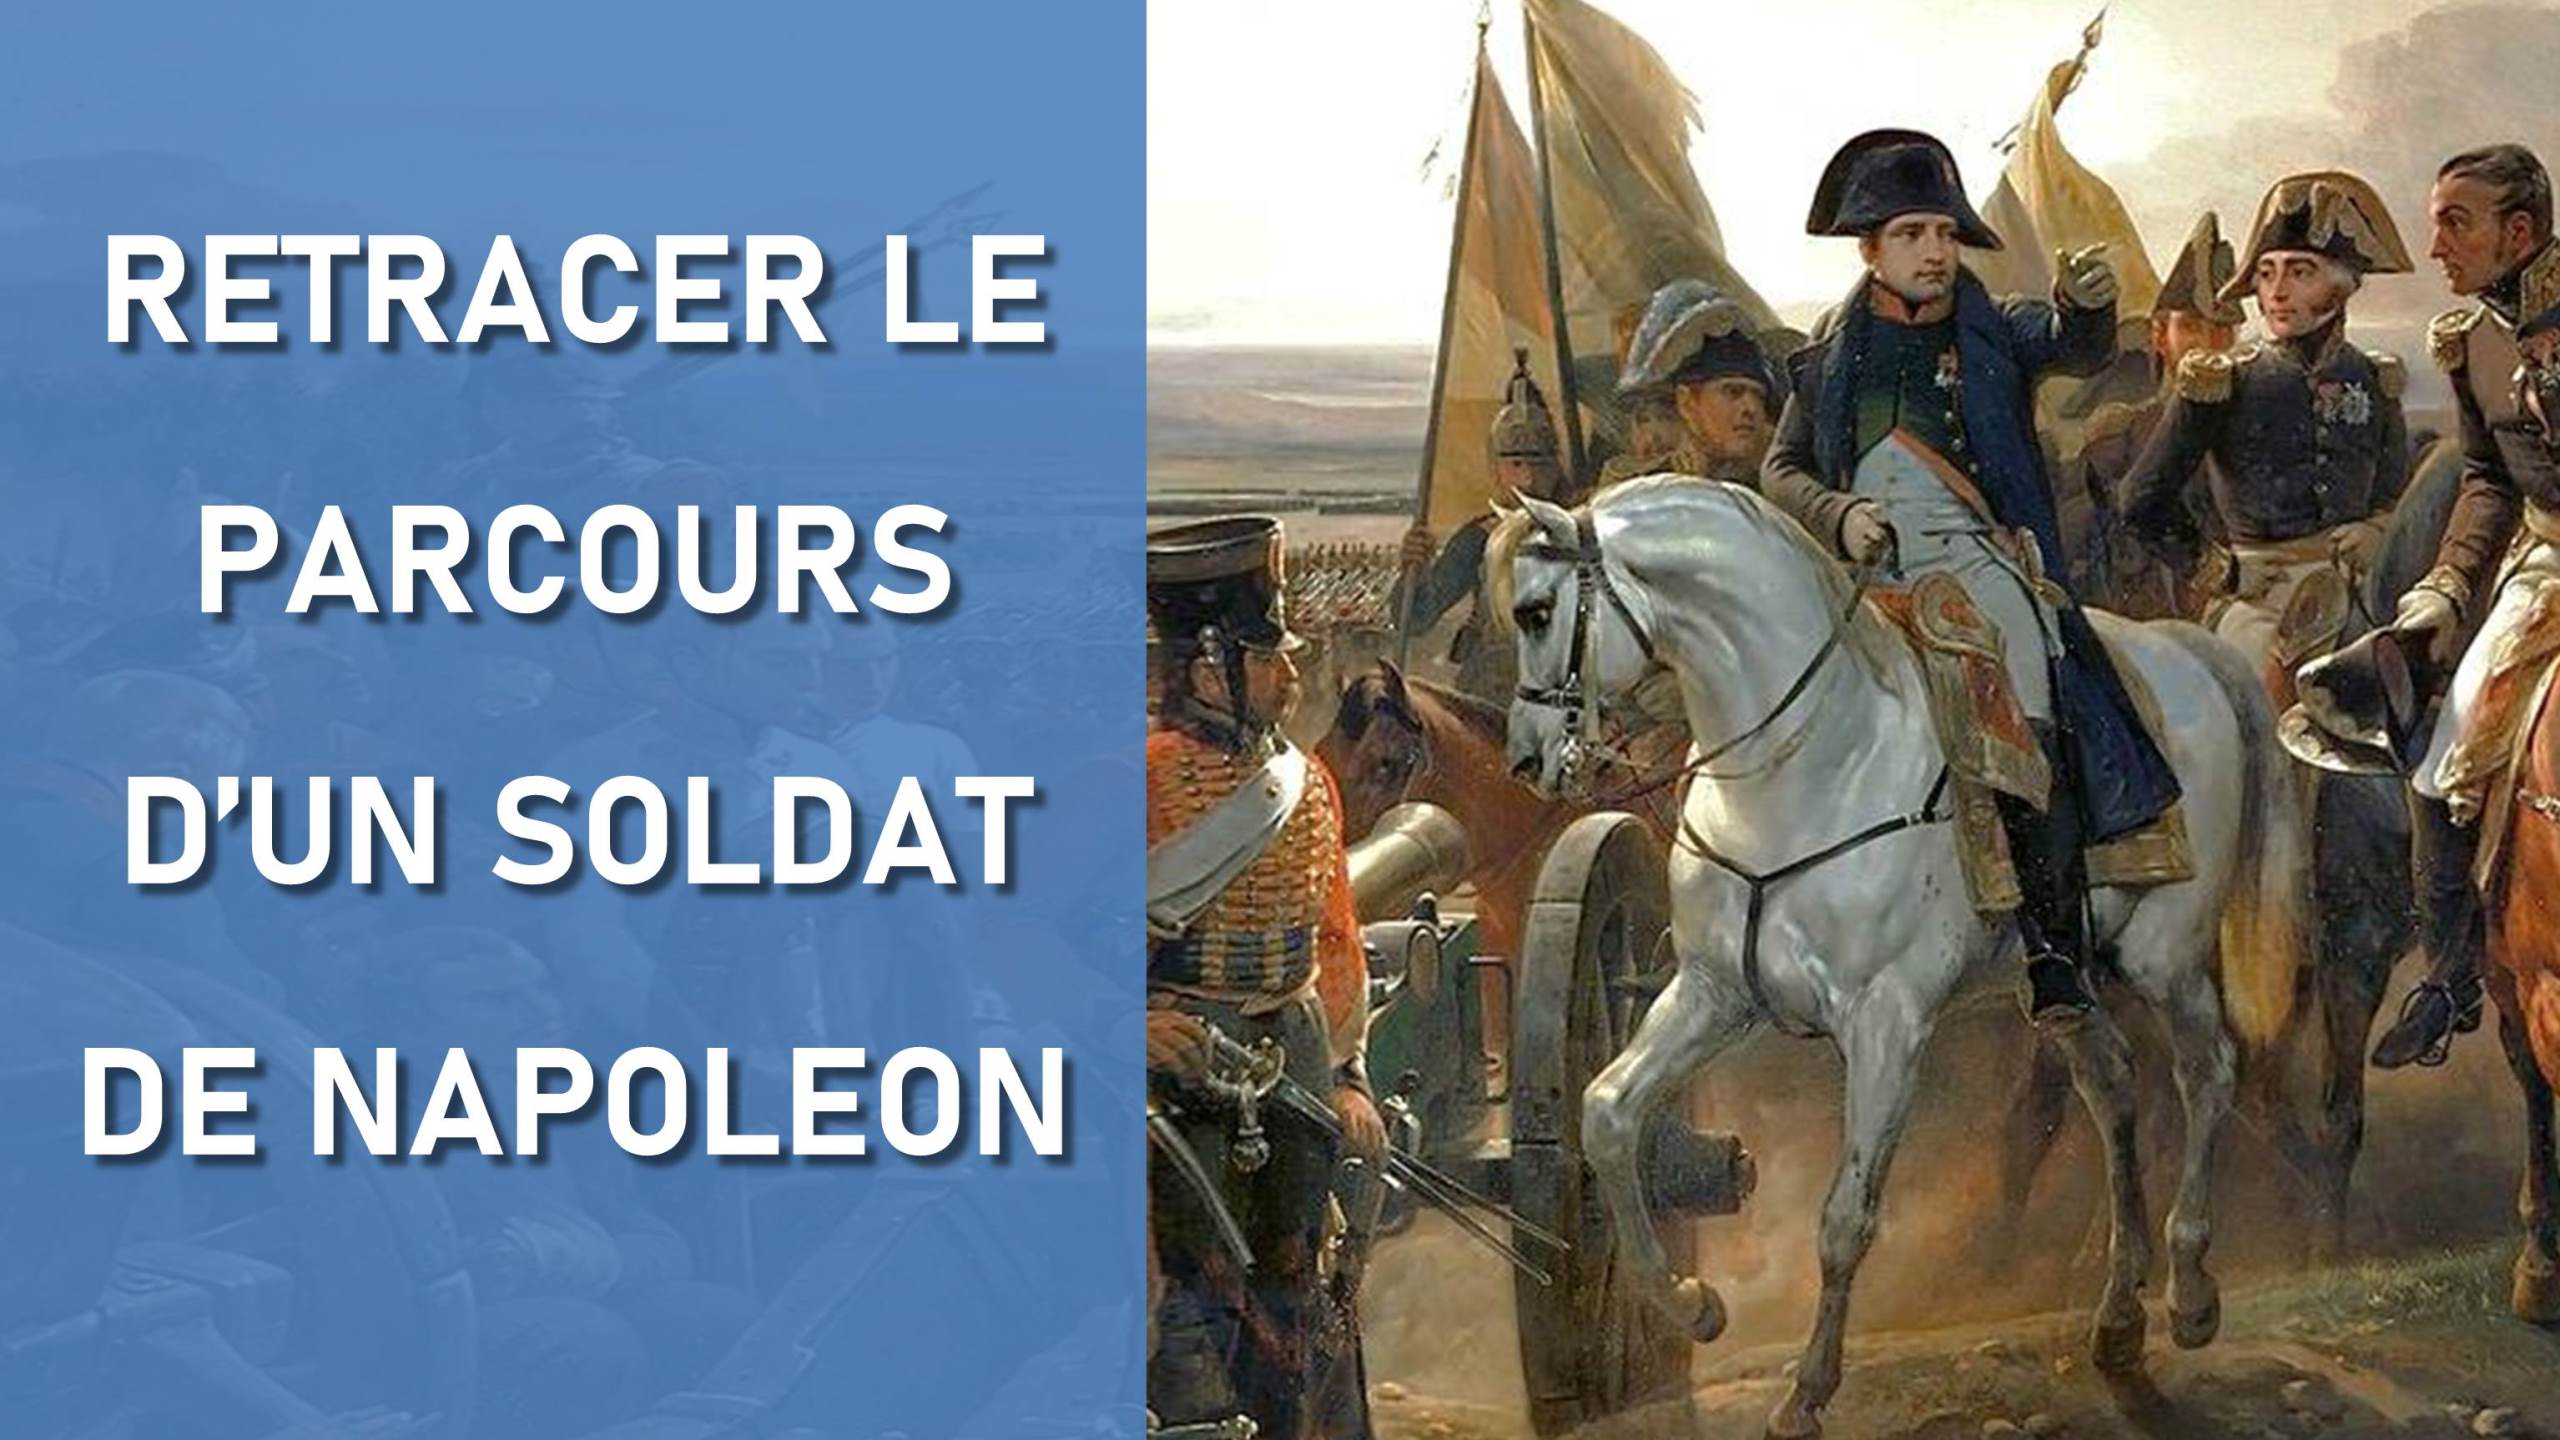 Retracer le parcours militaire d'un soldat de Napoléon sous le Premier Empire